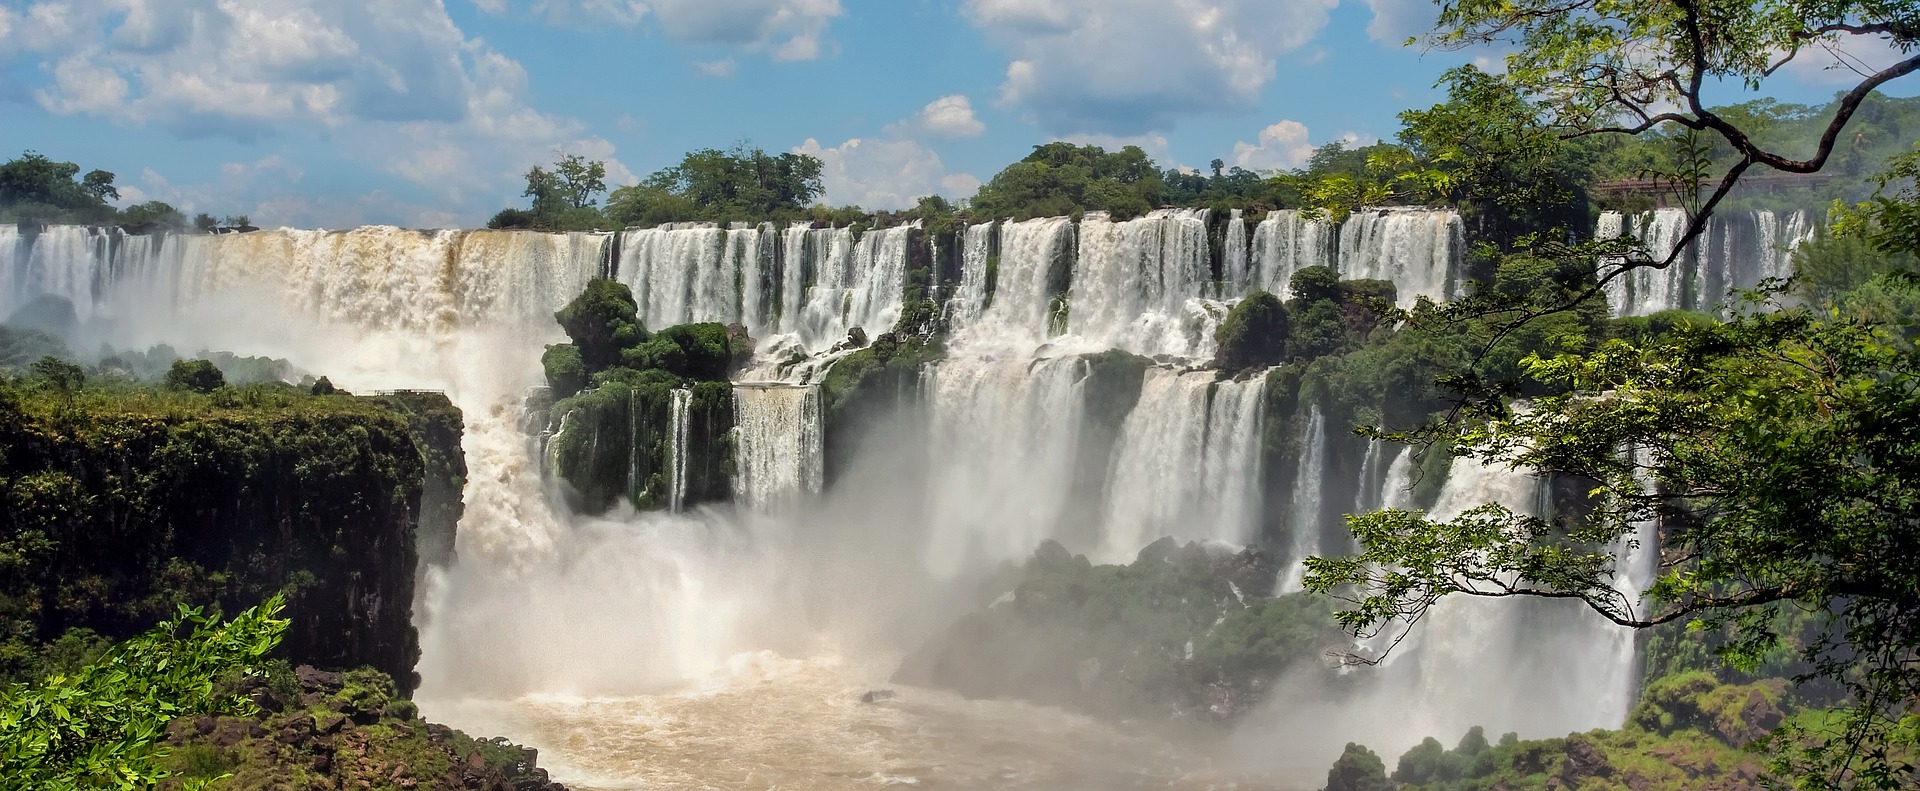 Parque Nacional do Iguaçu bate recorde de visitantes